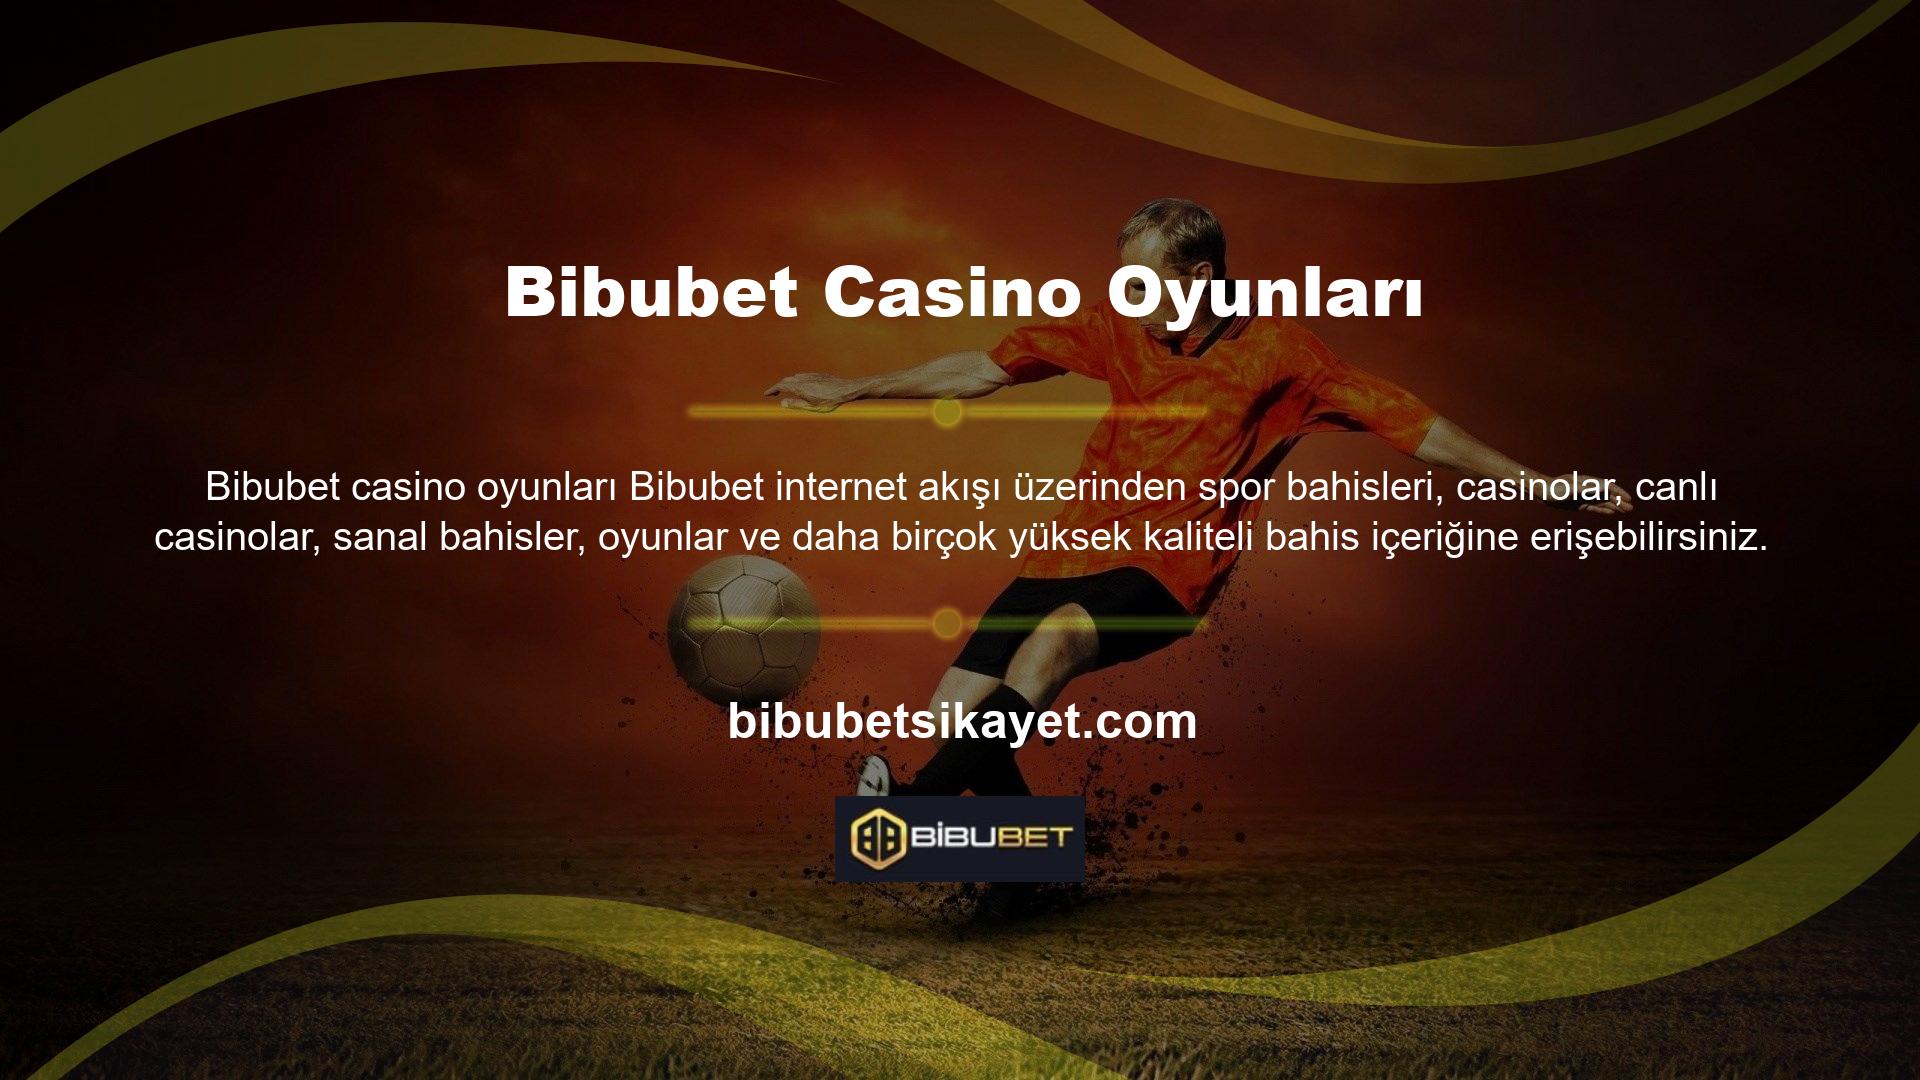 Canlı casino alanı sağlayıcısı Bibubet, üyelere casinoyu gerçek krupiyelerle deneyimleme fırsatı sunuyor